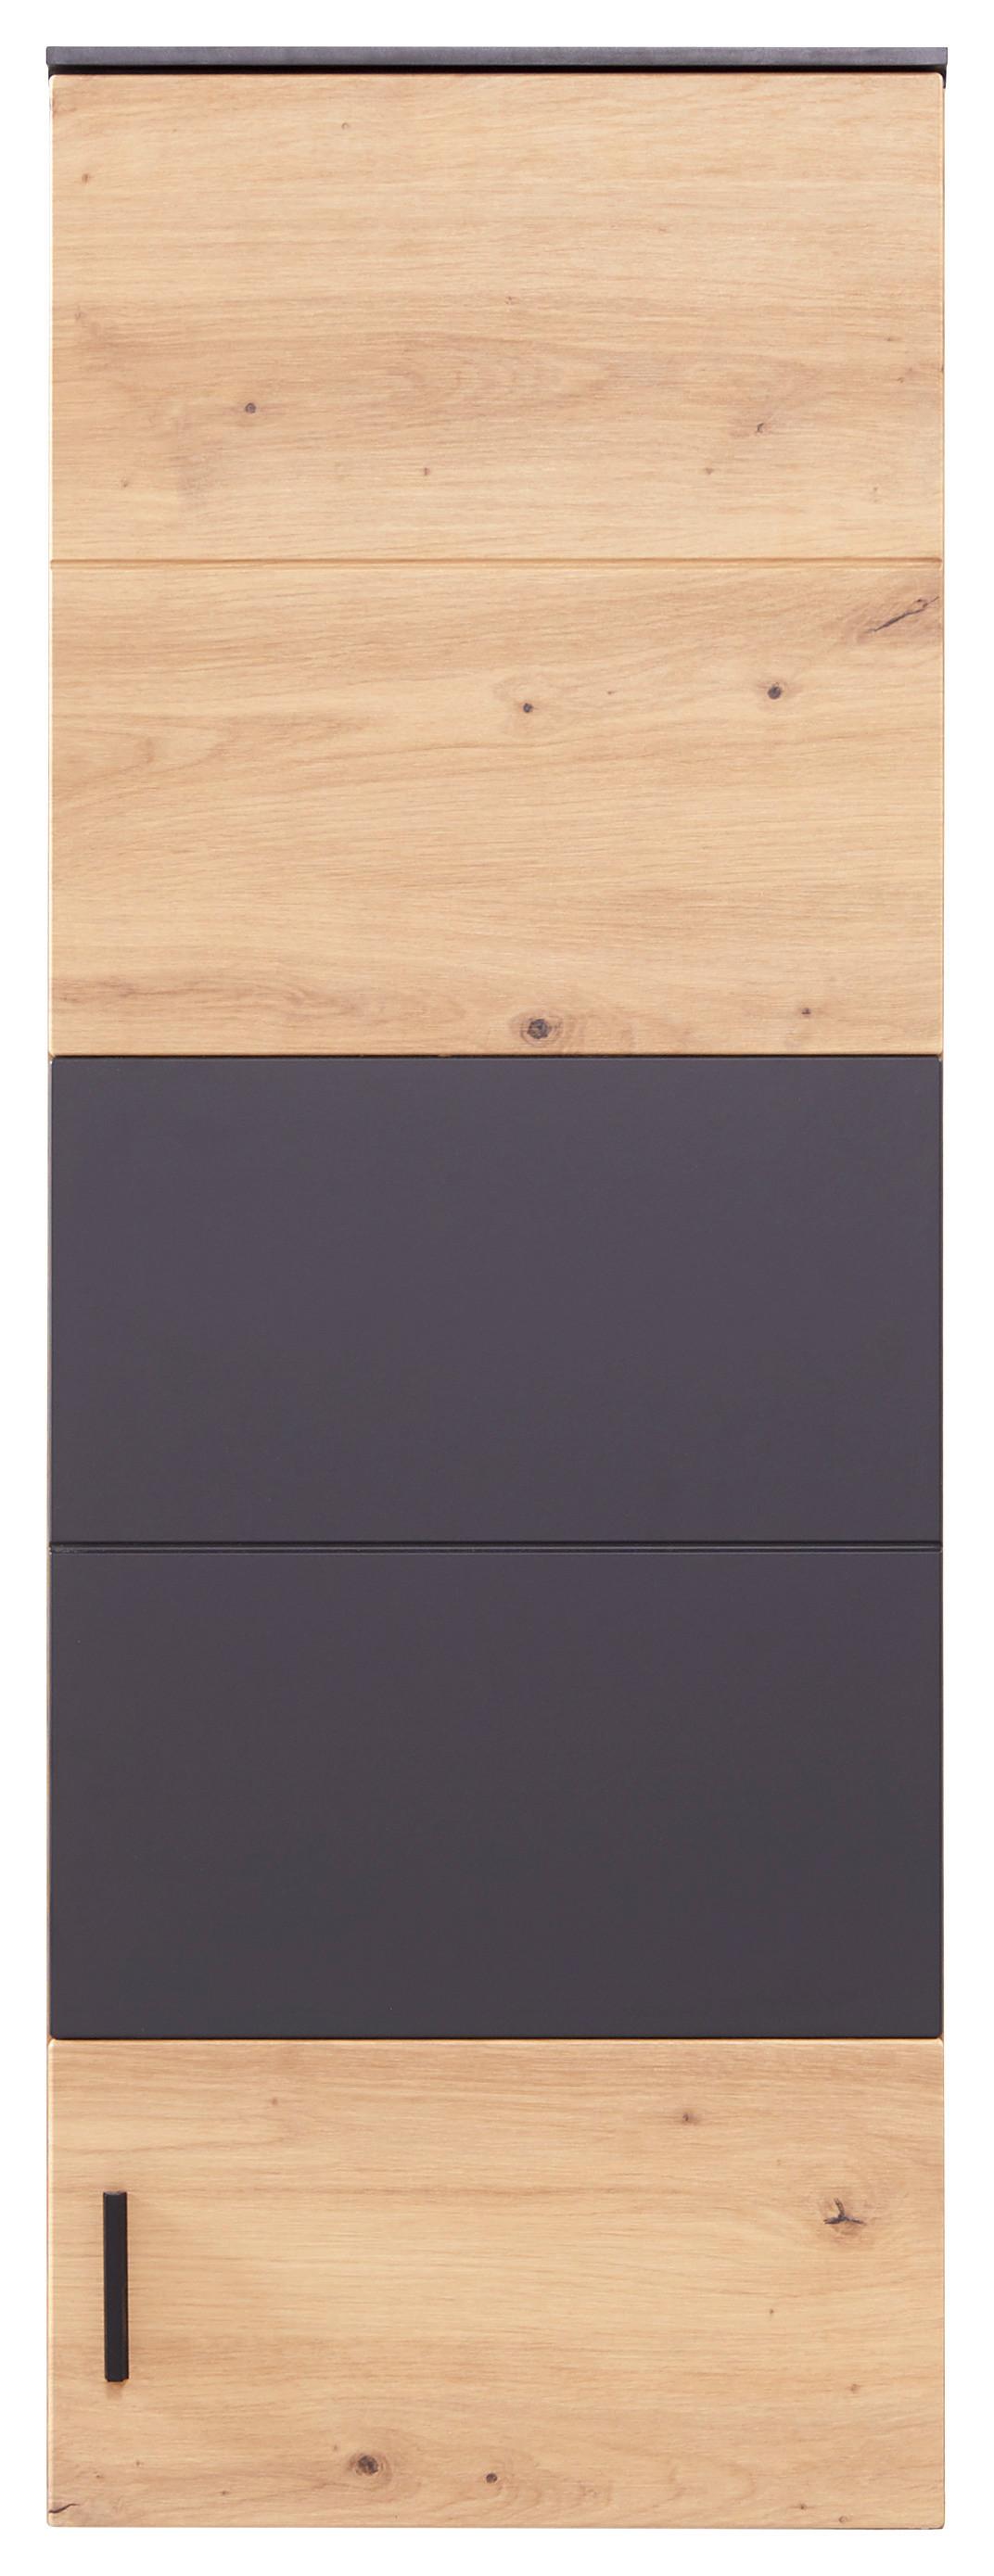 Závěsná Skříňka Tonale - šedá/barvy dubu, Moderní, kompozitní dřevo/plast (40,4/111/33cm)